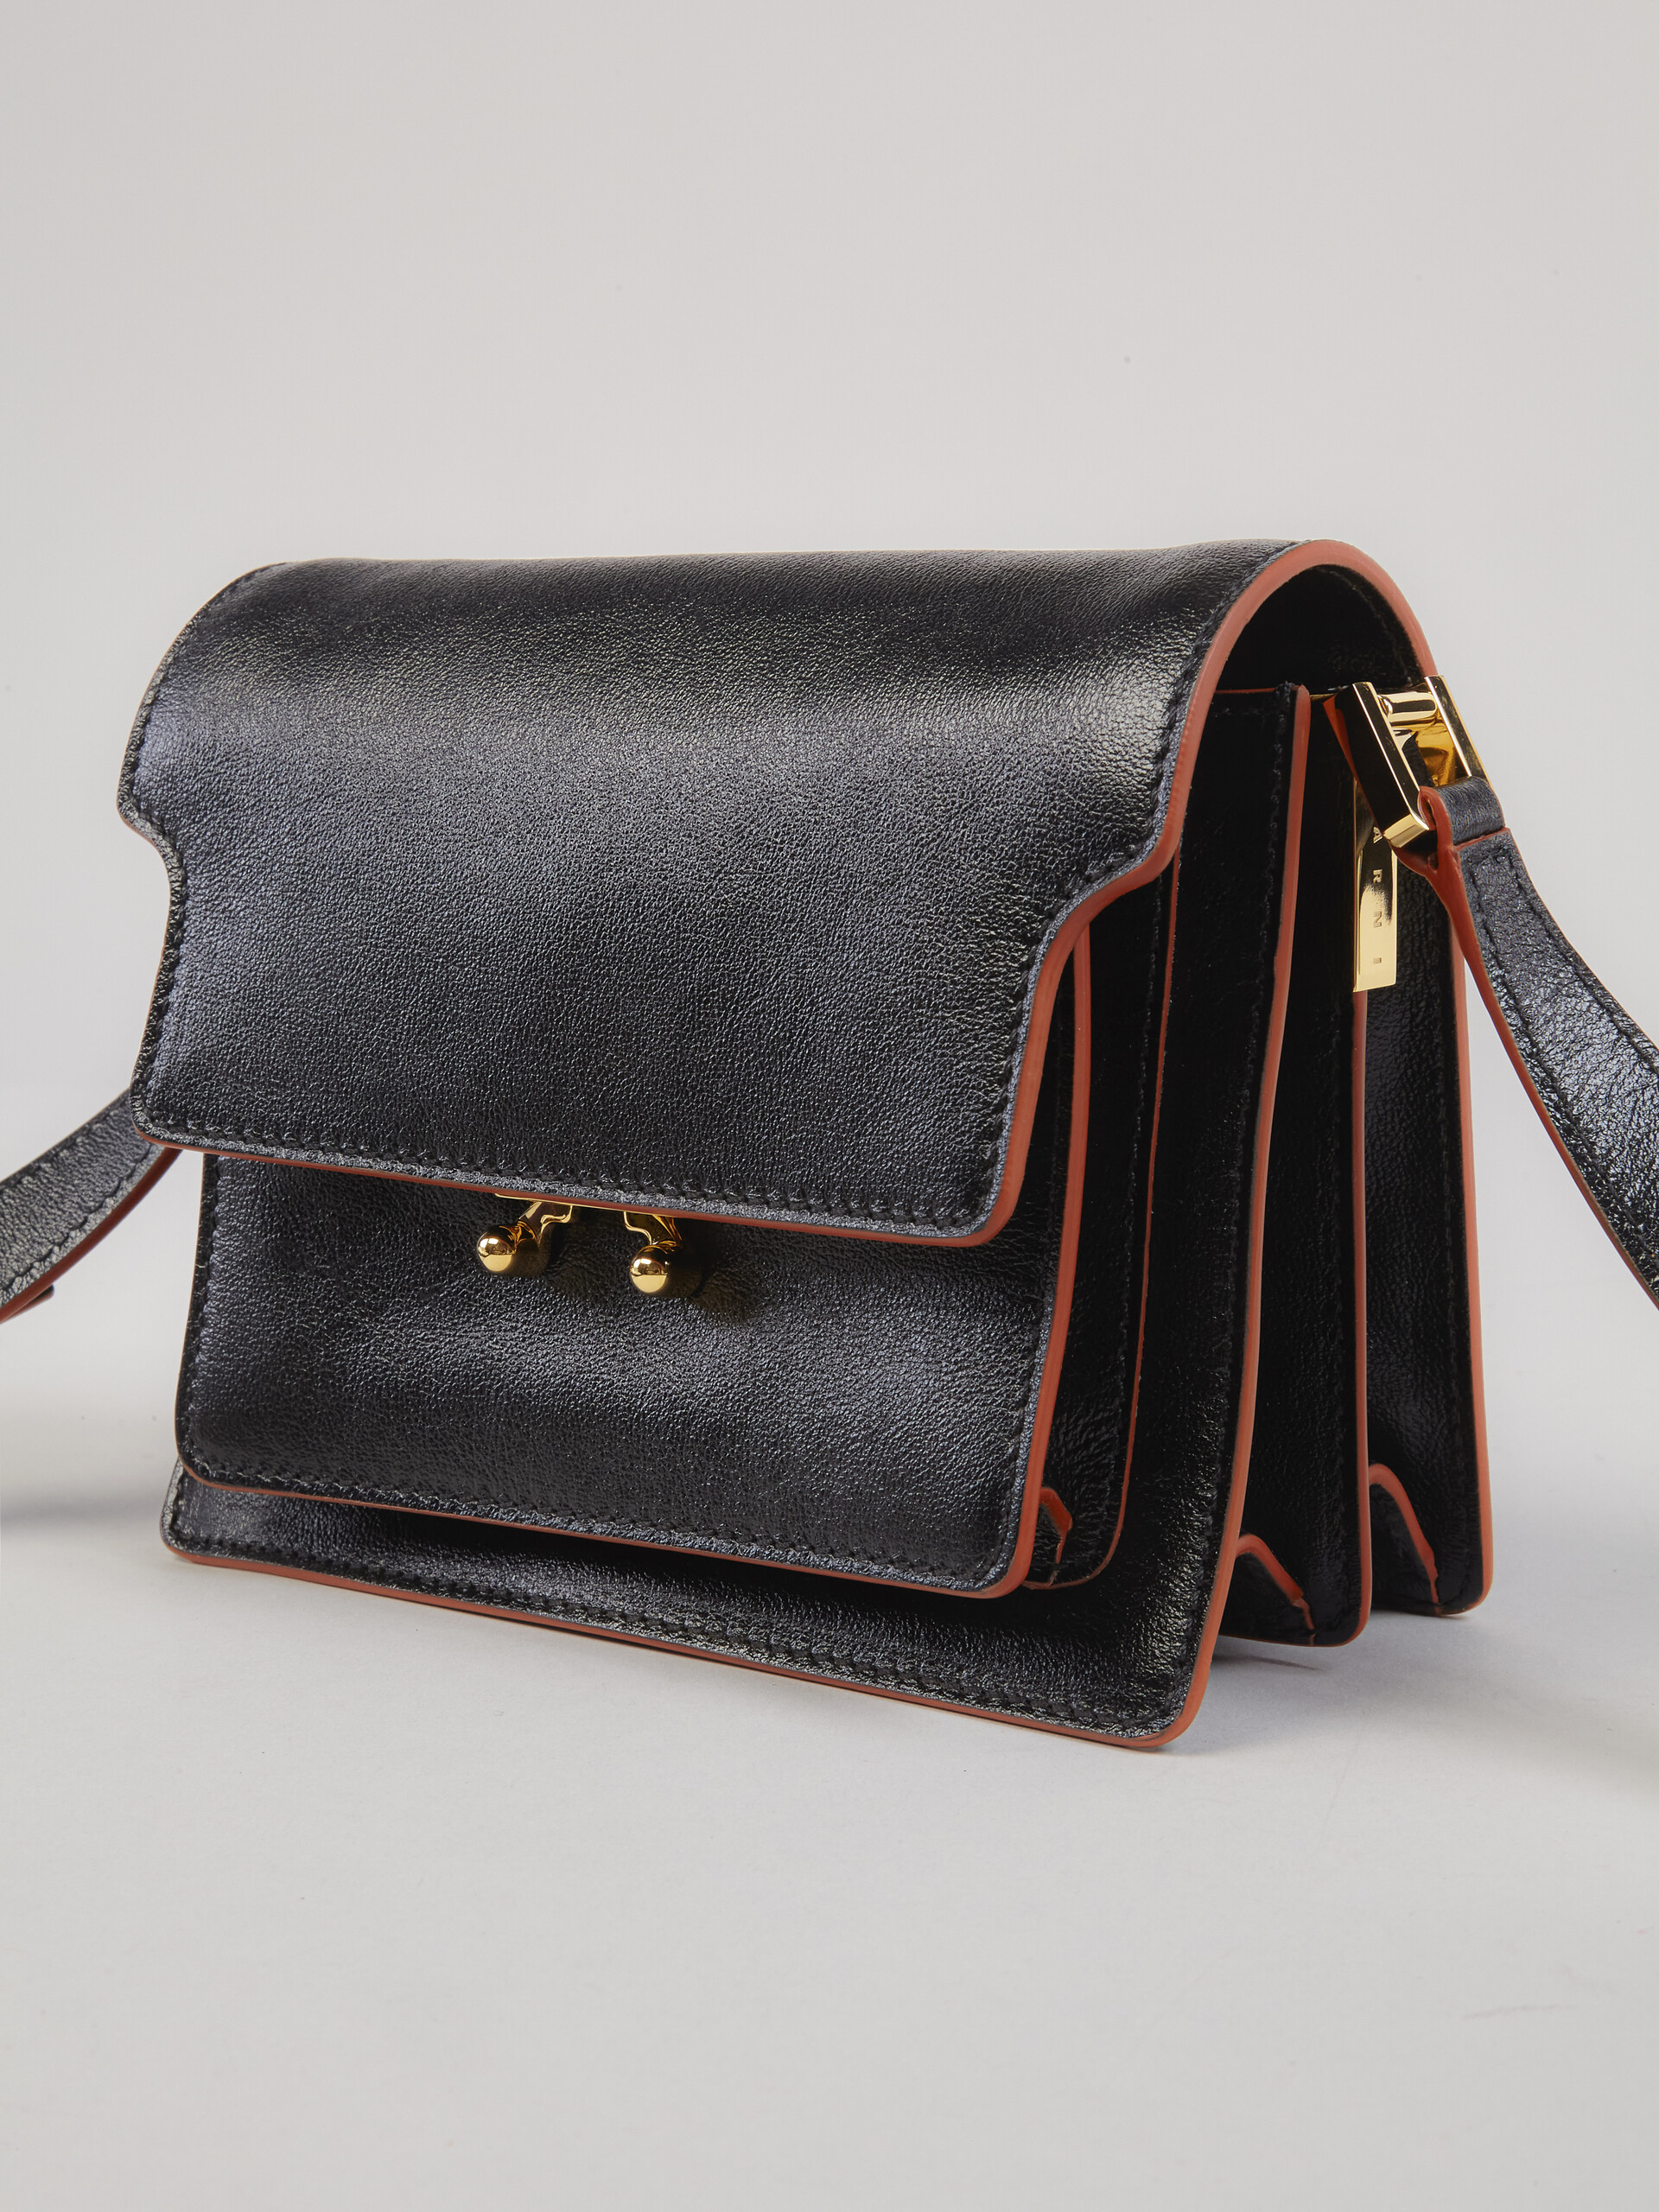 Trunk Soft Mini Bag in black leather - Shoulder Bag - Image 4